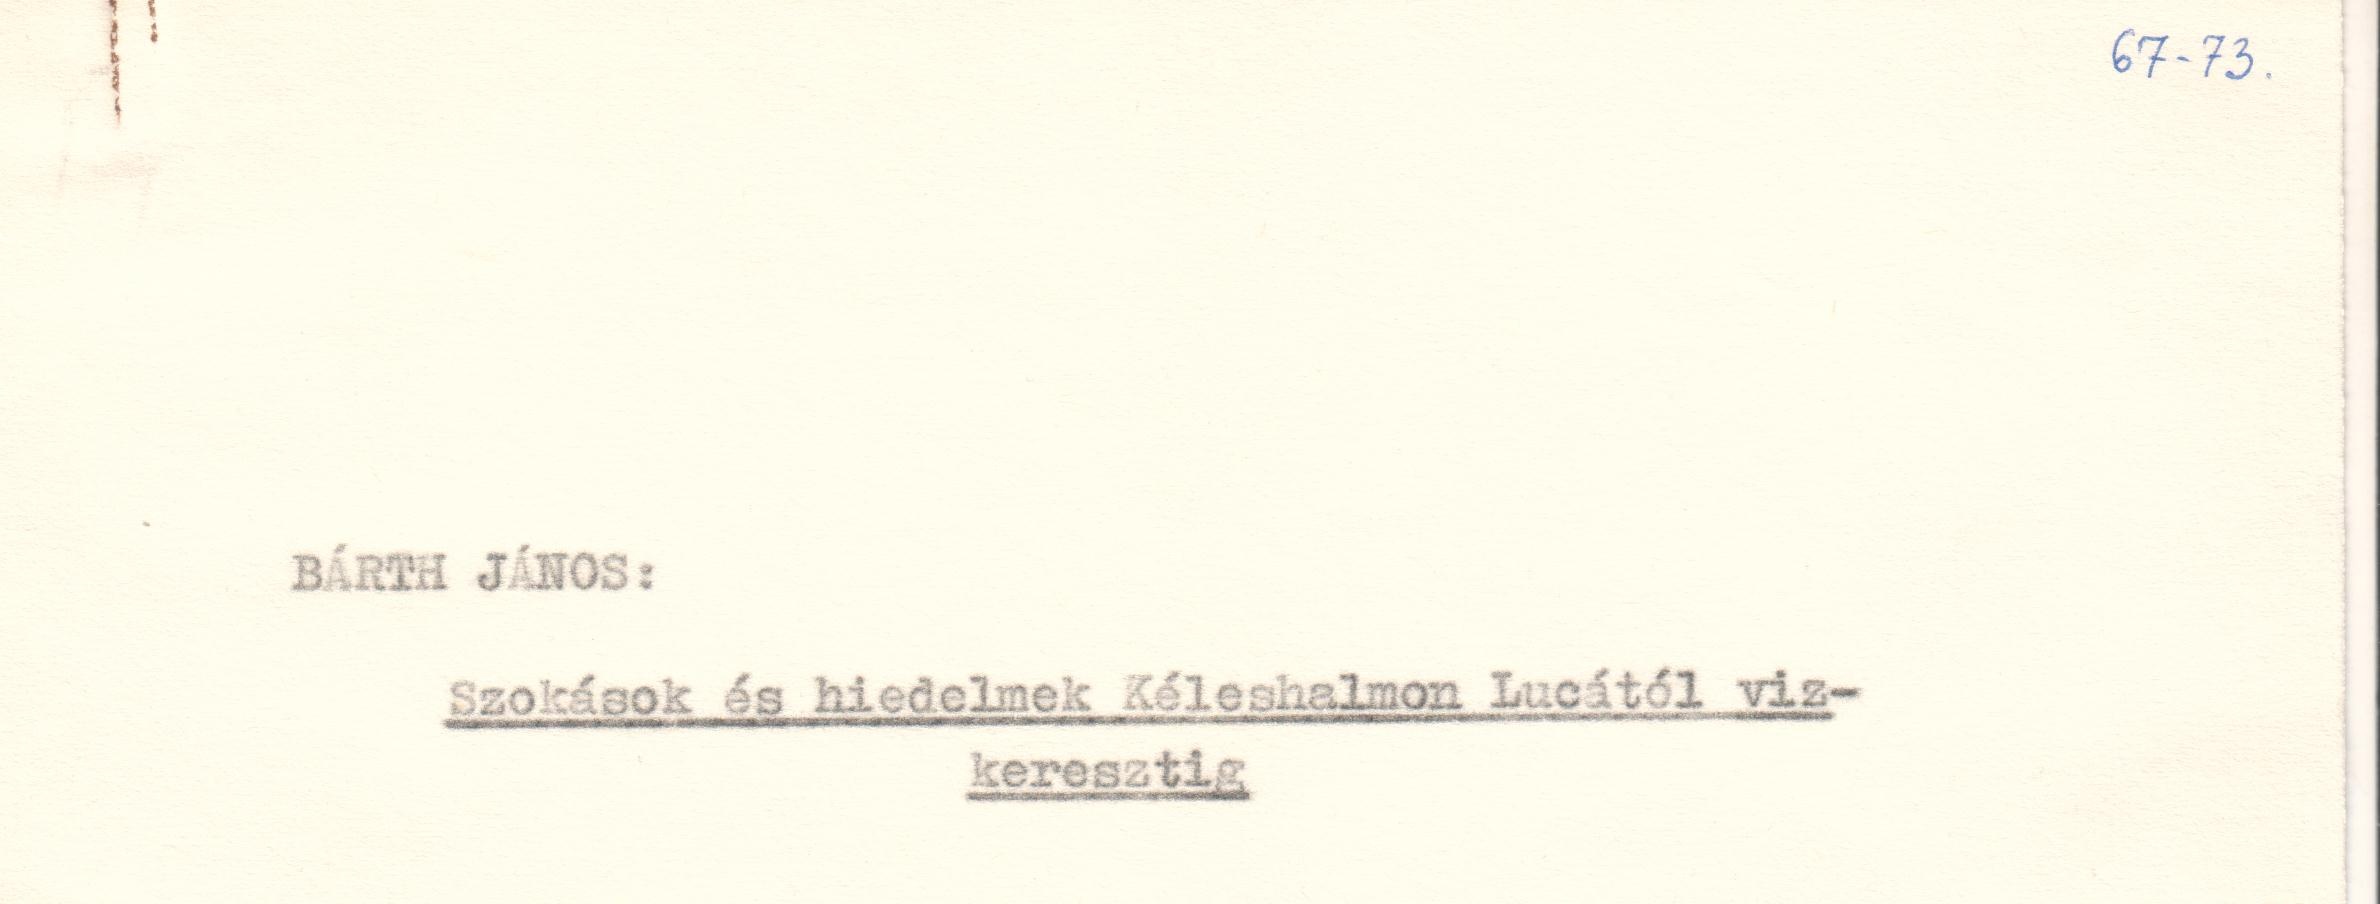 Szokások és hiedelmek Kéleshalmon Lucától vízkeresztig c. cikk kézirata. (Viski Károly Múzeum Kalocsa RR-F)